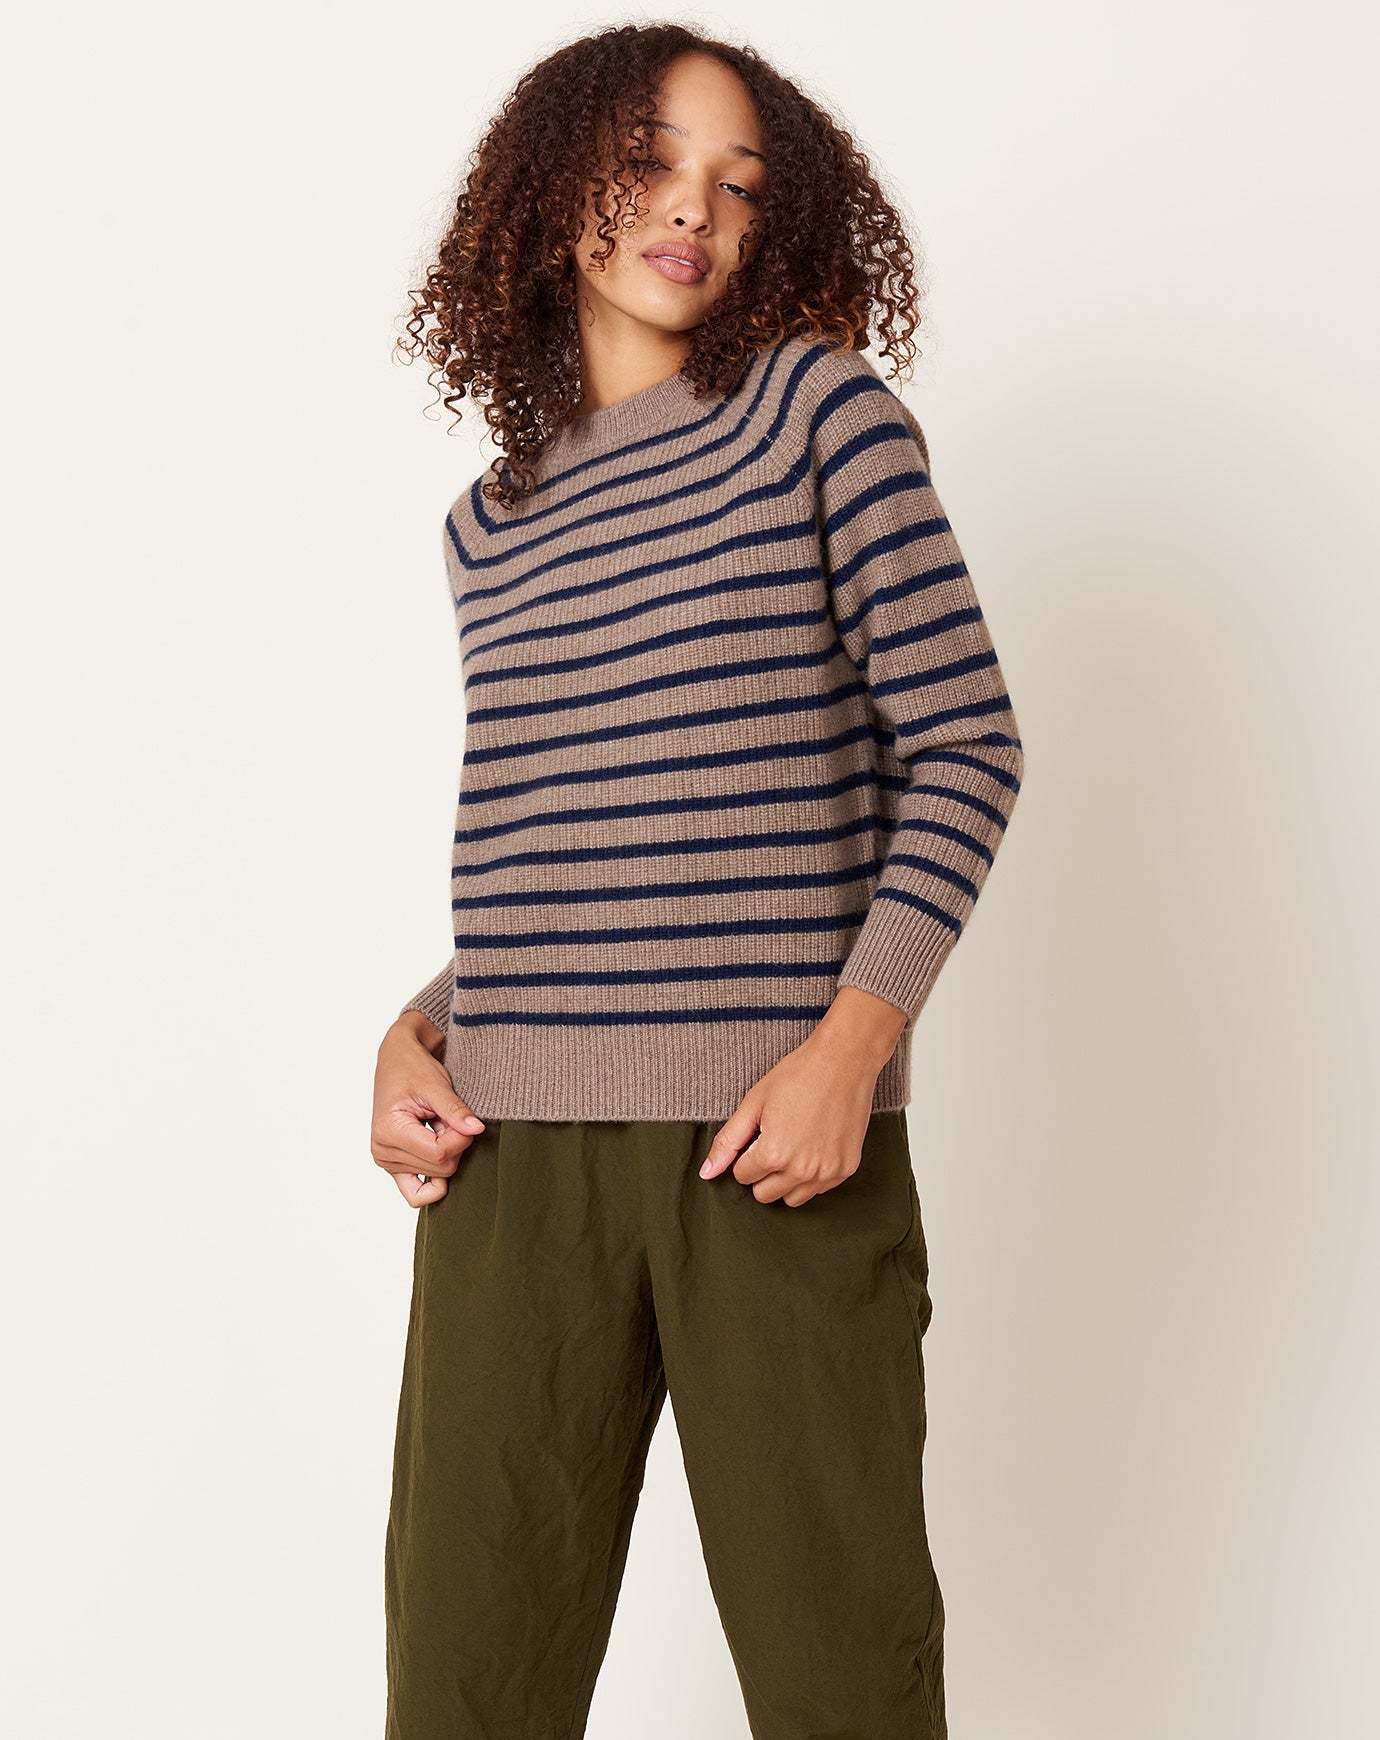 Demylee Rin Stripe Sweater in Non-Dye Beige & Bright Navy